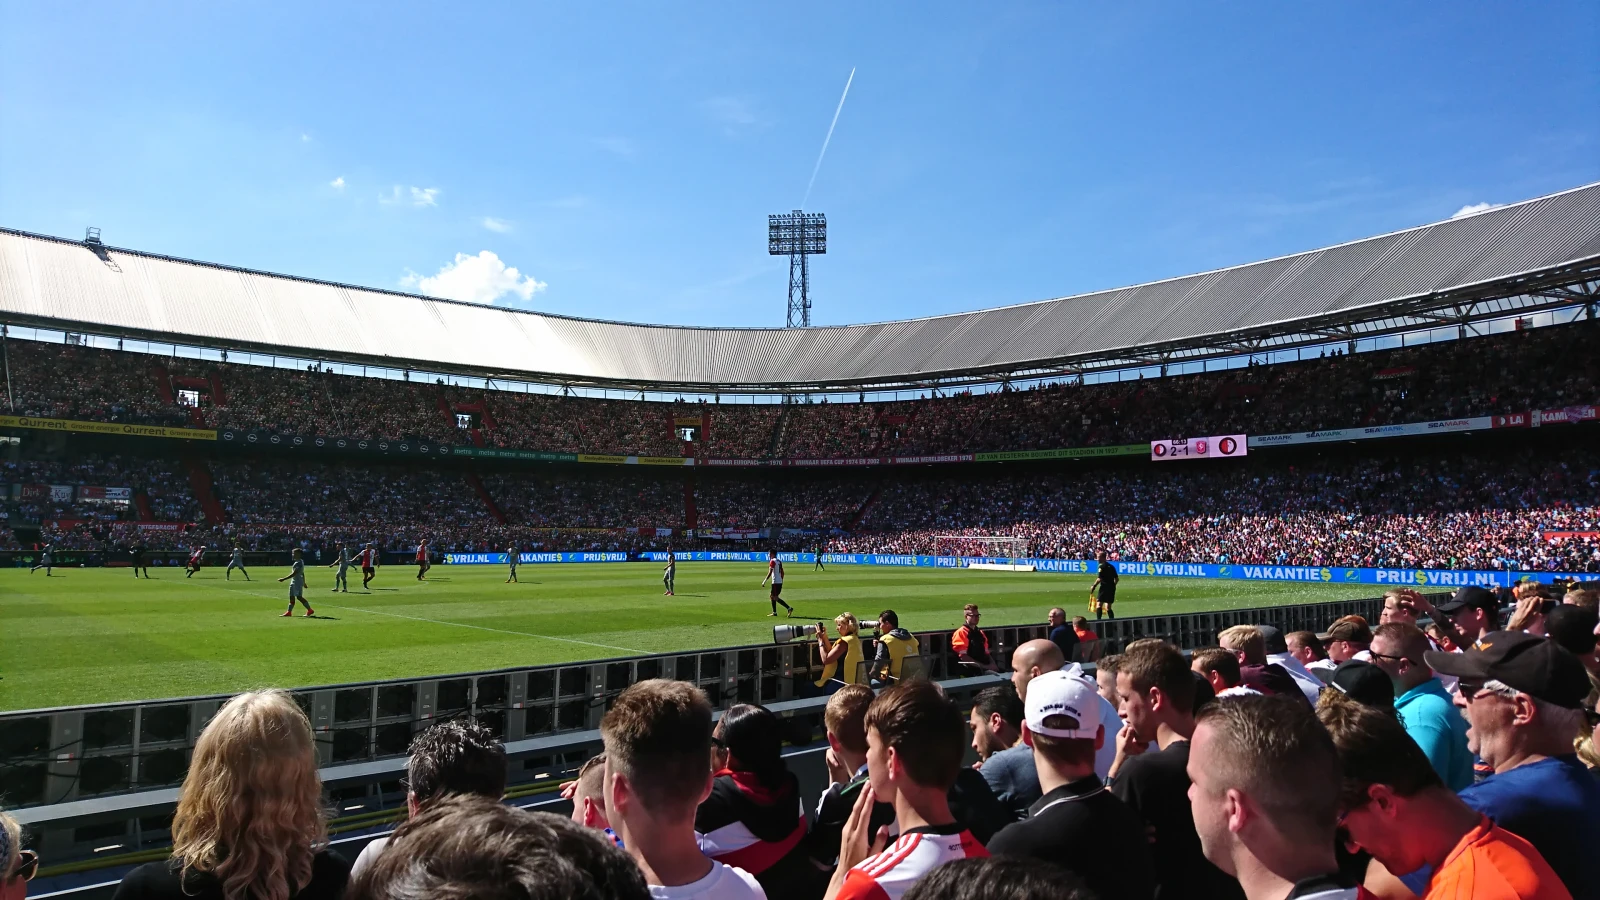 AD: 'Voetbalstadions mogen binnen korte termijn weer volledig gevuld worden'